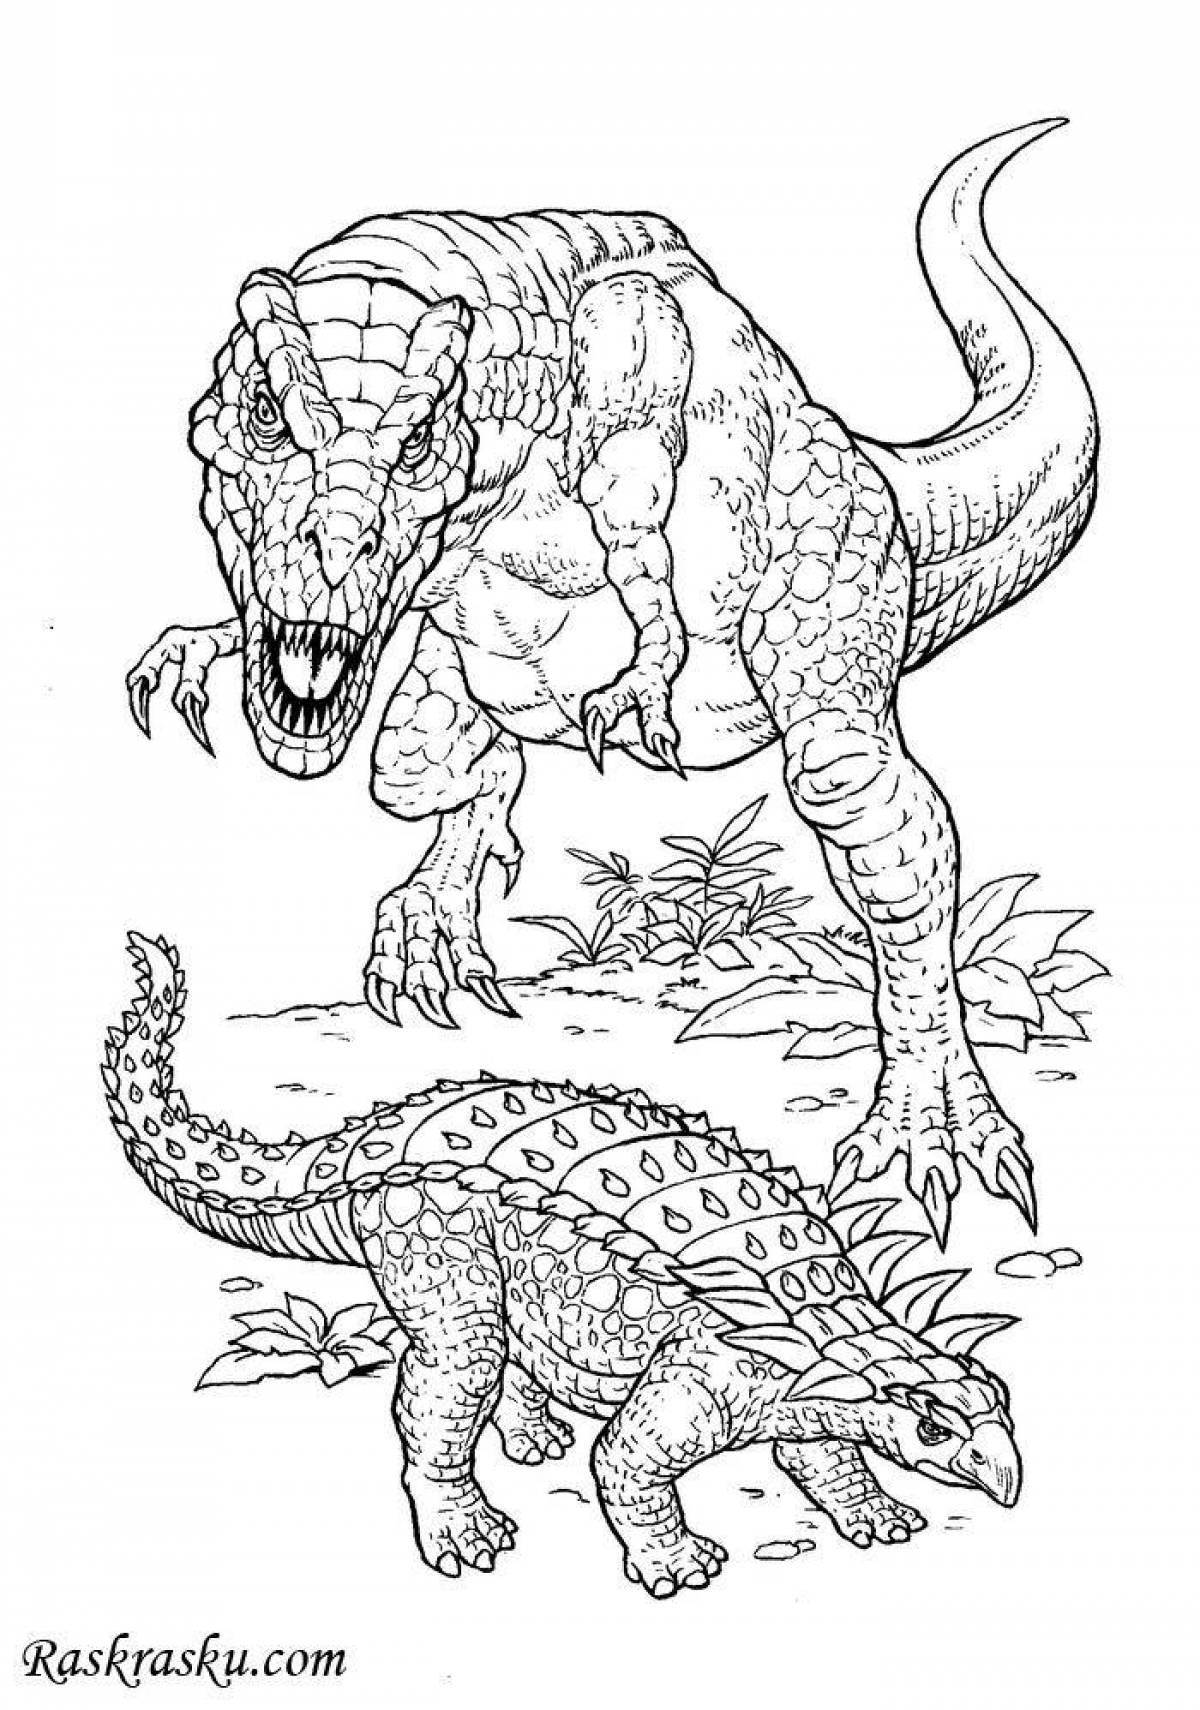 Увлекательная раскраска динозавров tirex